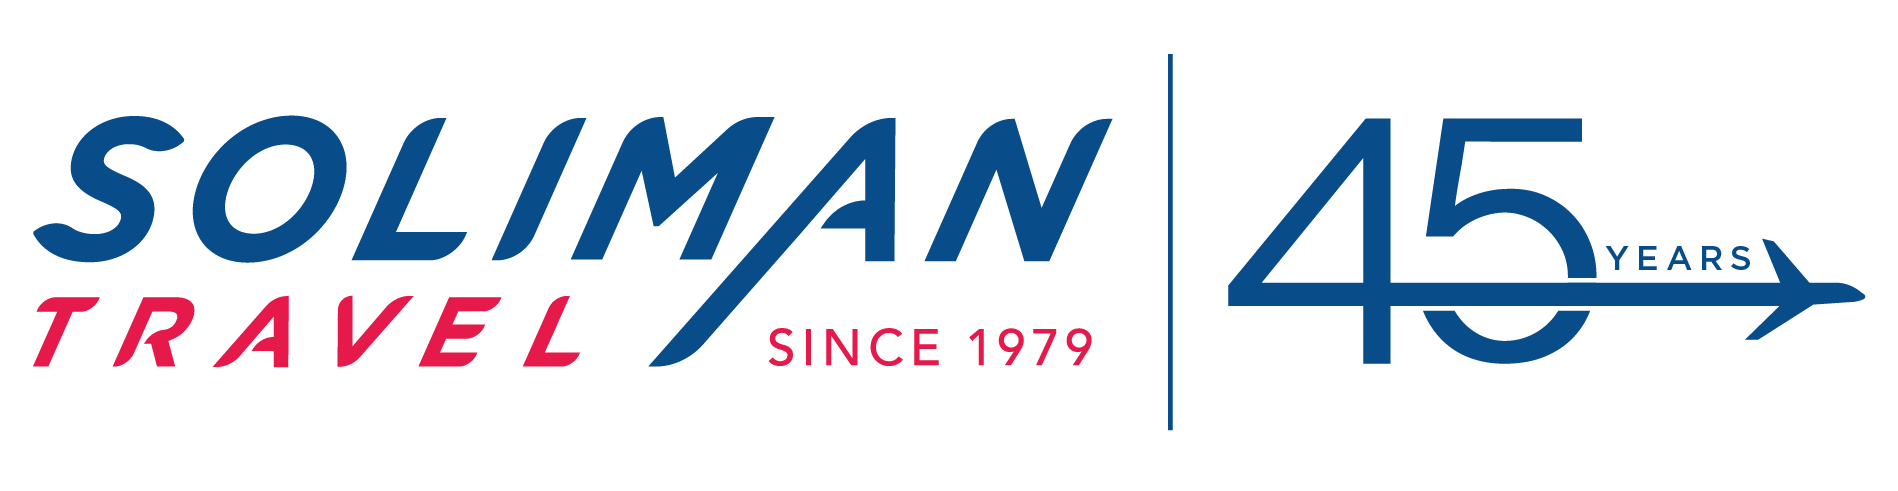 Soliman Travel Logo - 45 Year